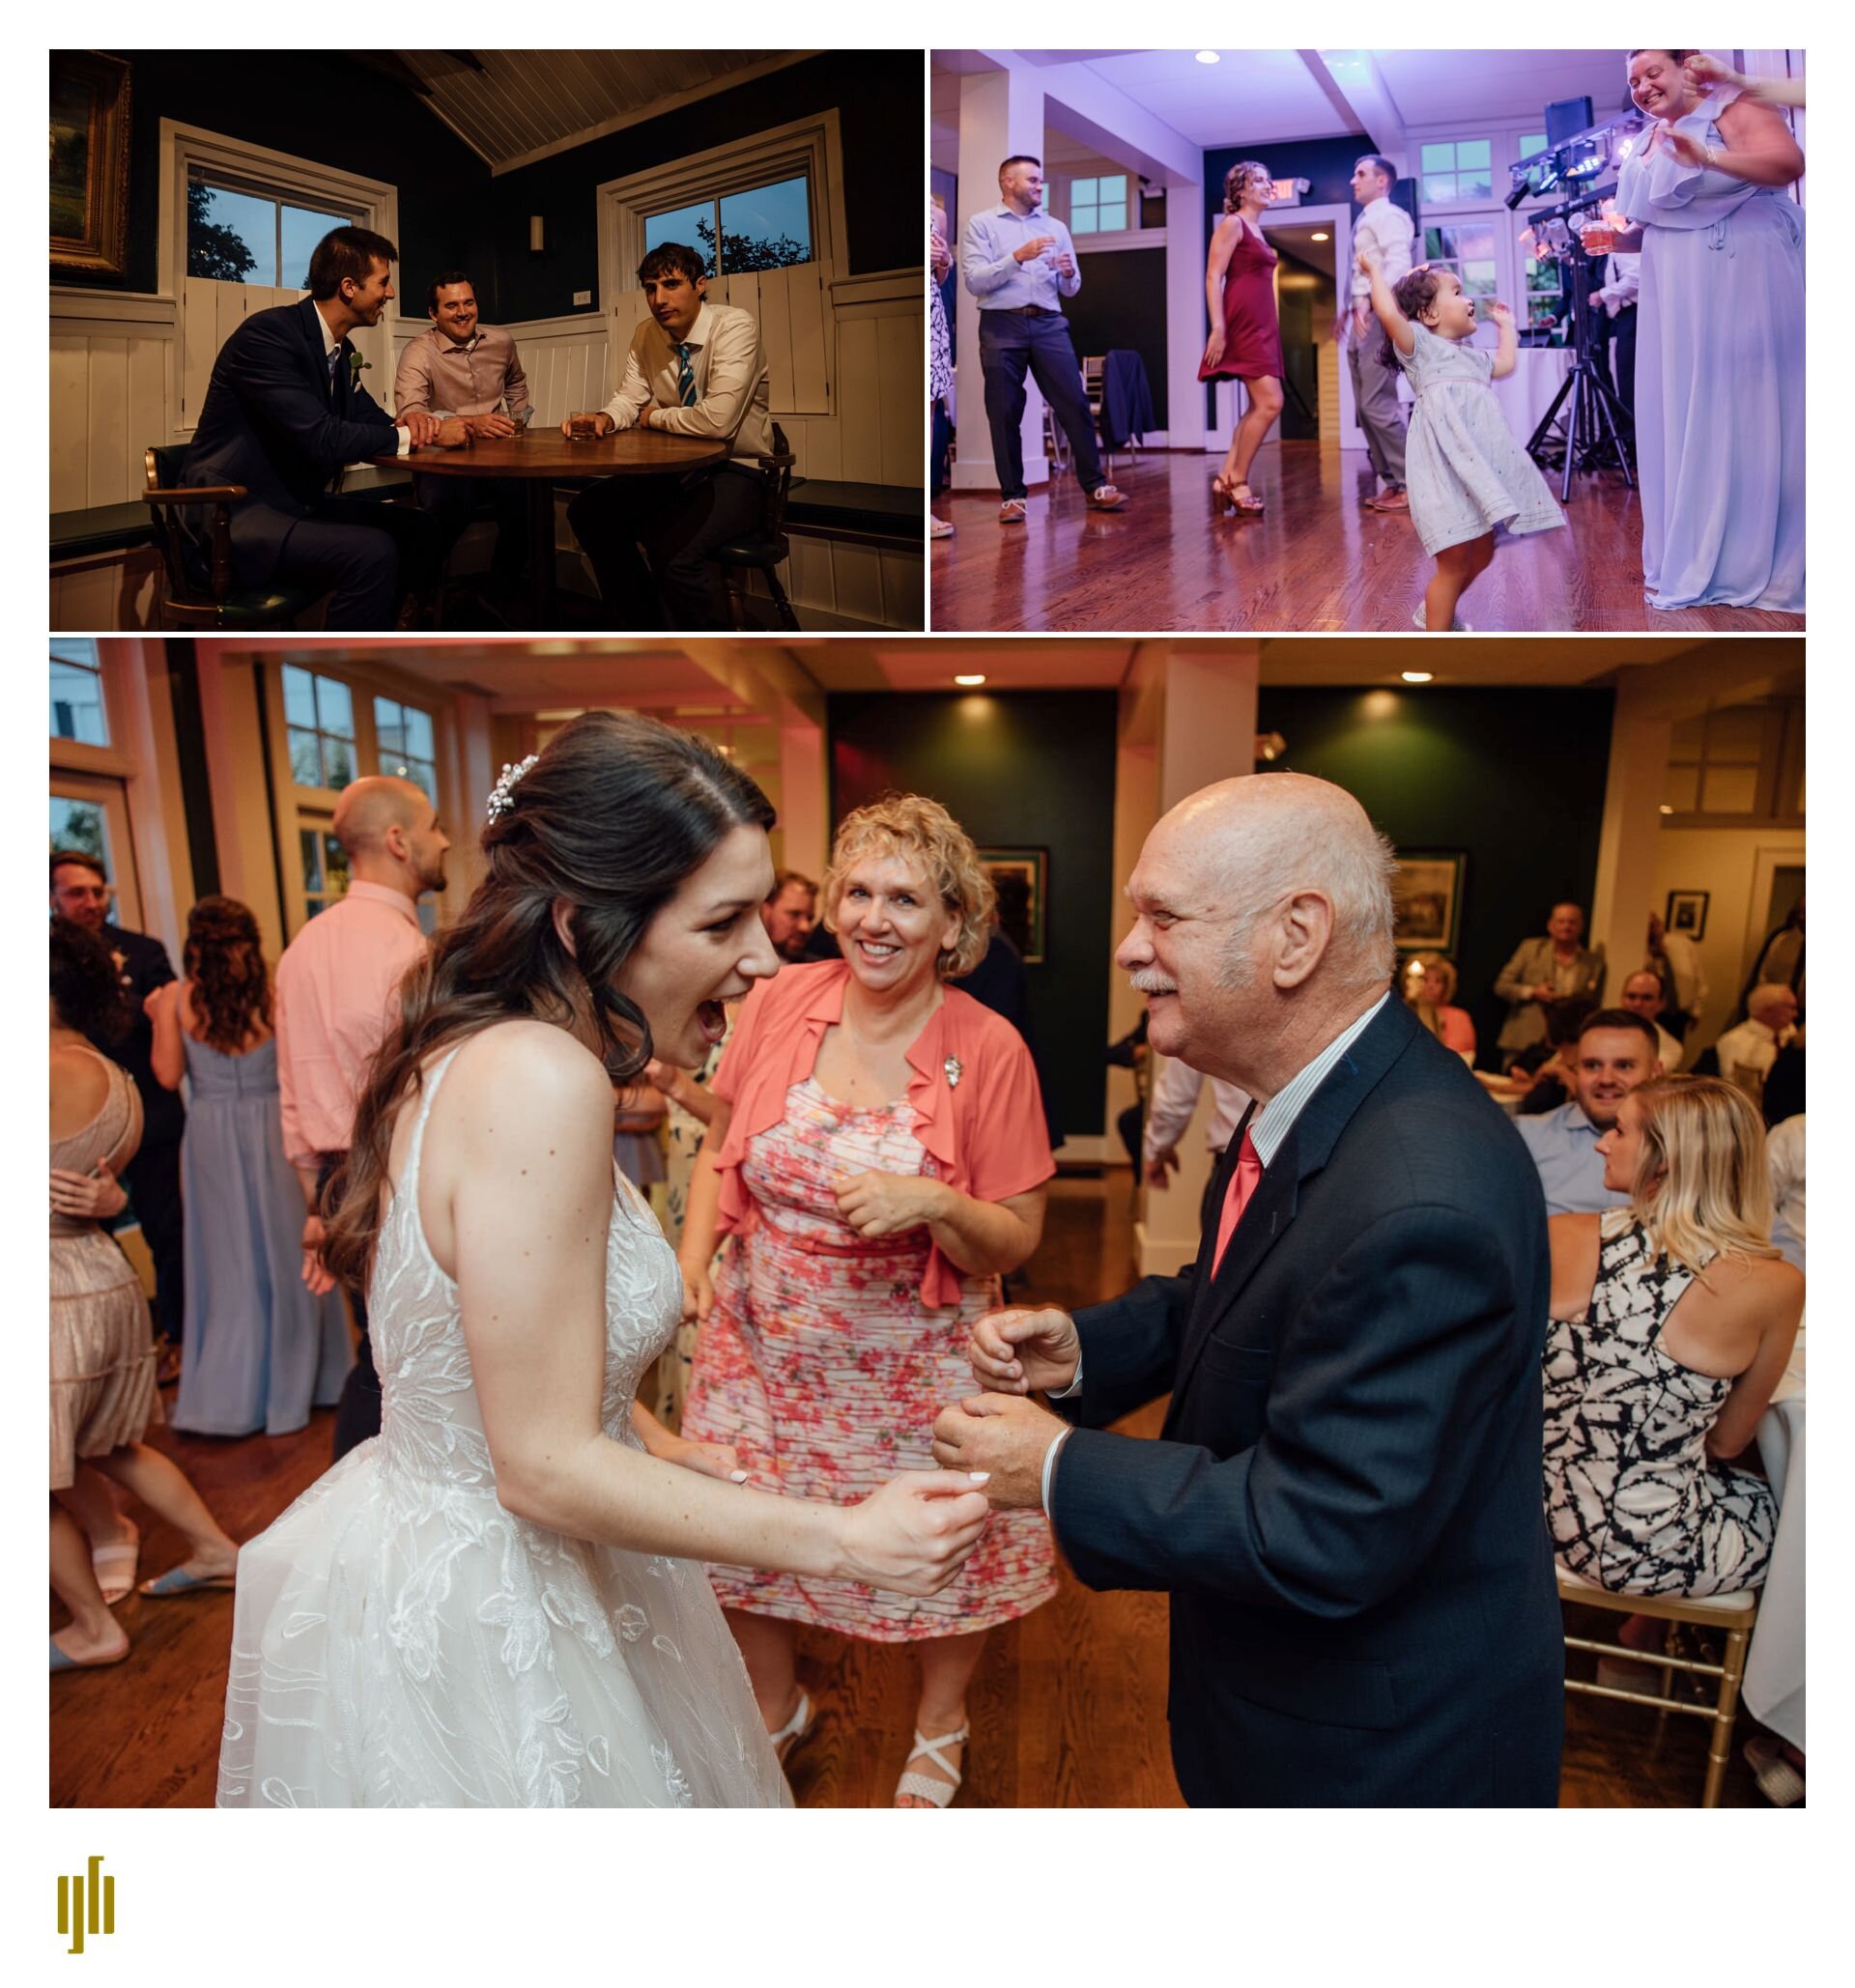 Caitlin and Jarrod - Toledo wedding photographer-Grant Beachy 36.jpg